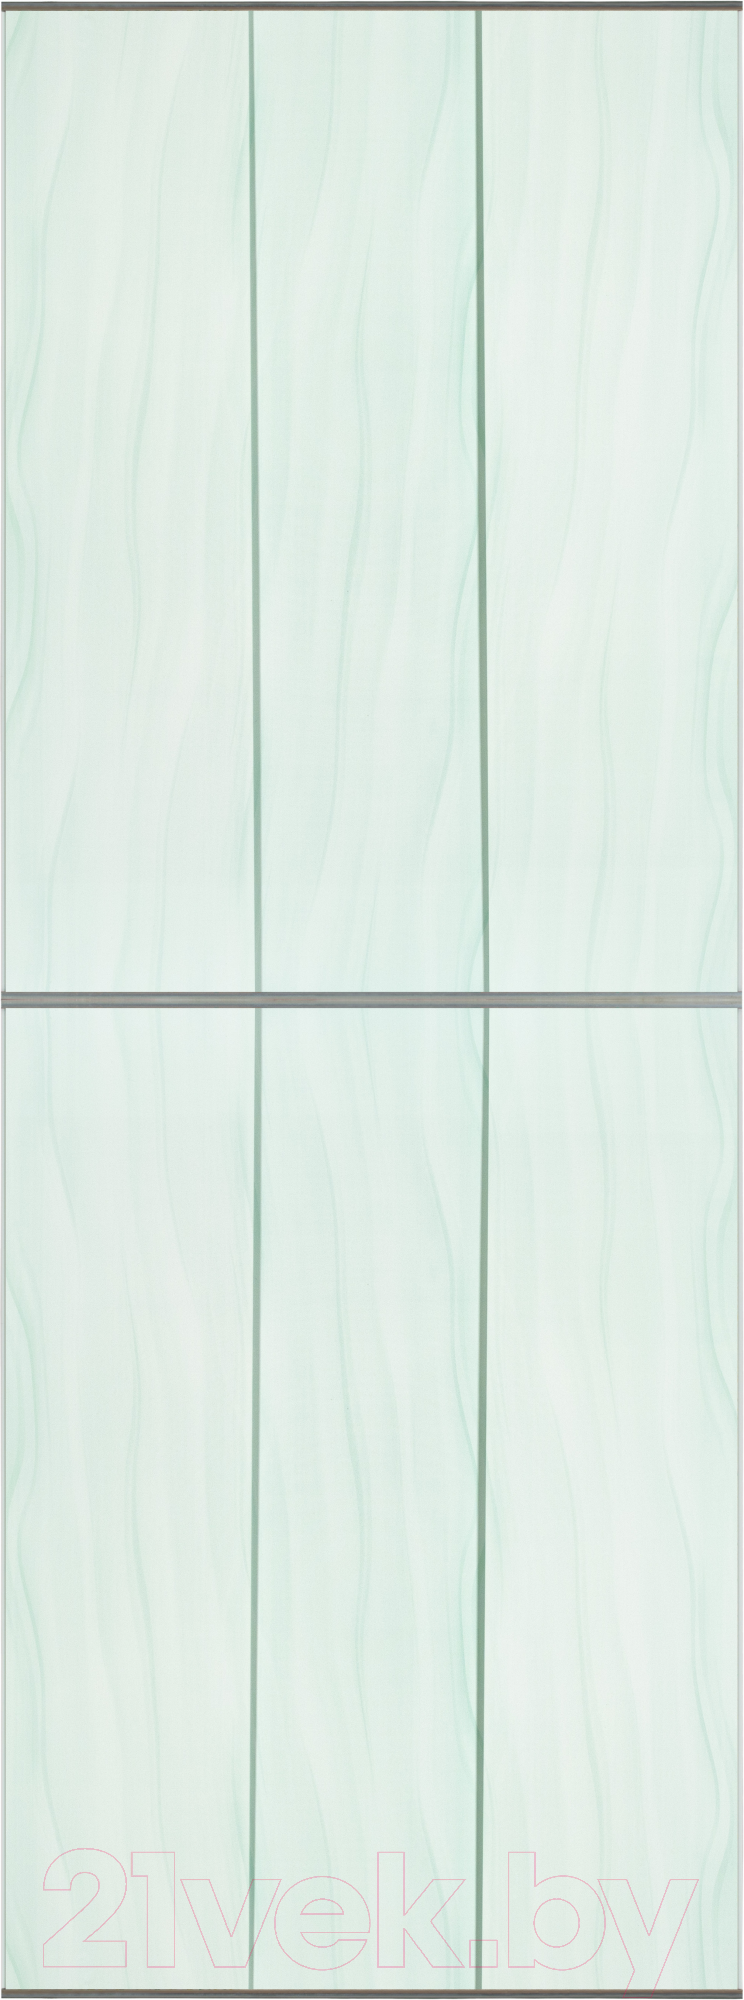 Экран-дверка Comfort Alumin Group Волна зеленая 73x200